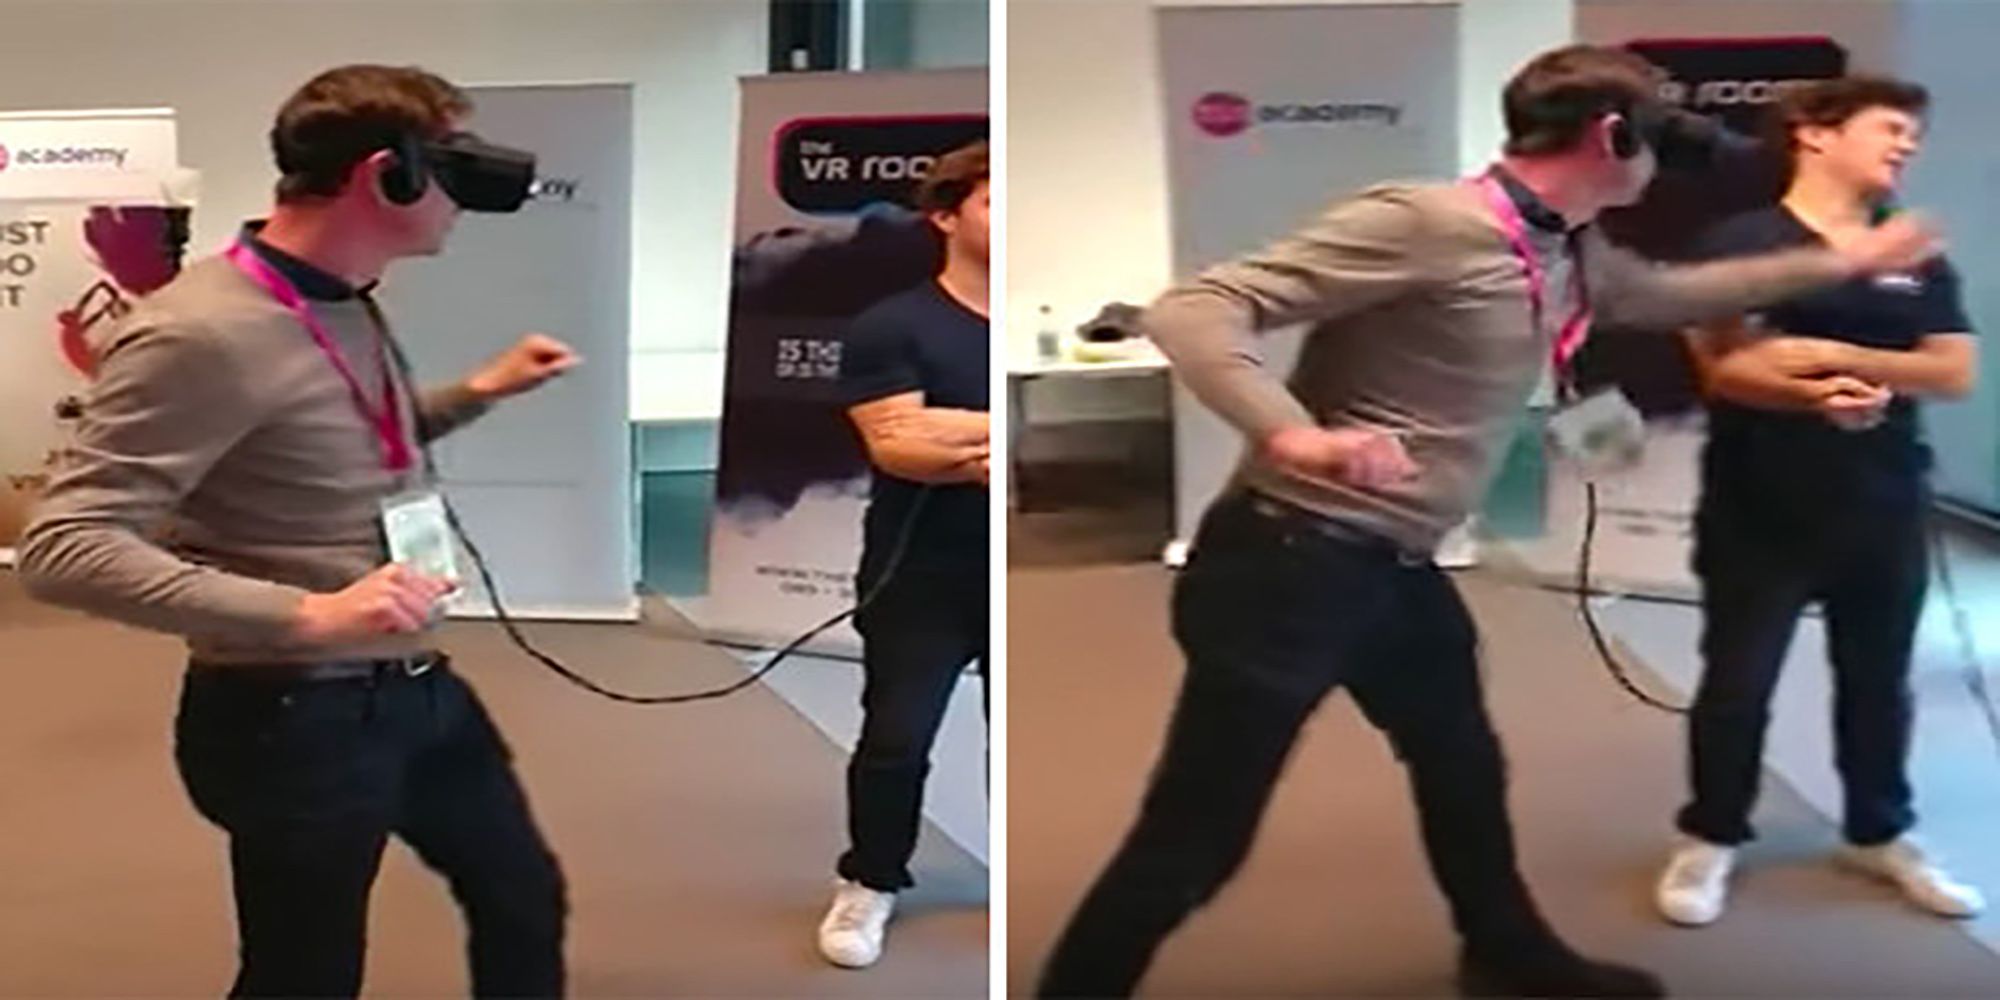 A man testing an Oculus Rift punches an onlooker in the face.